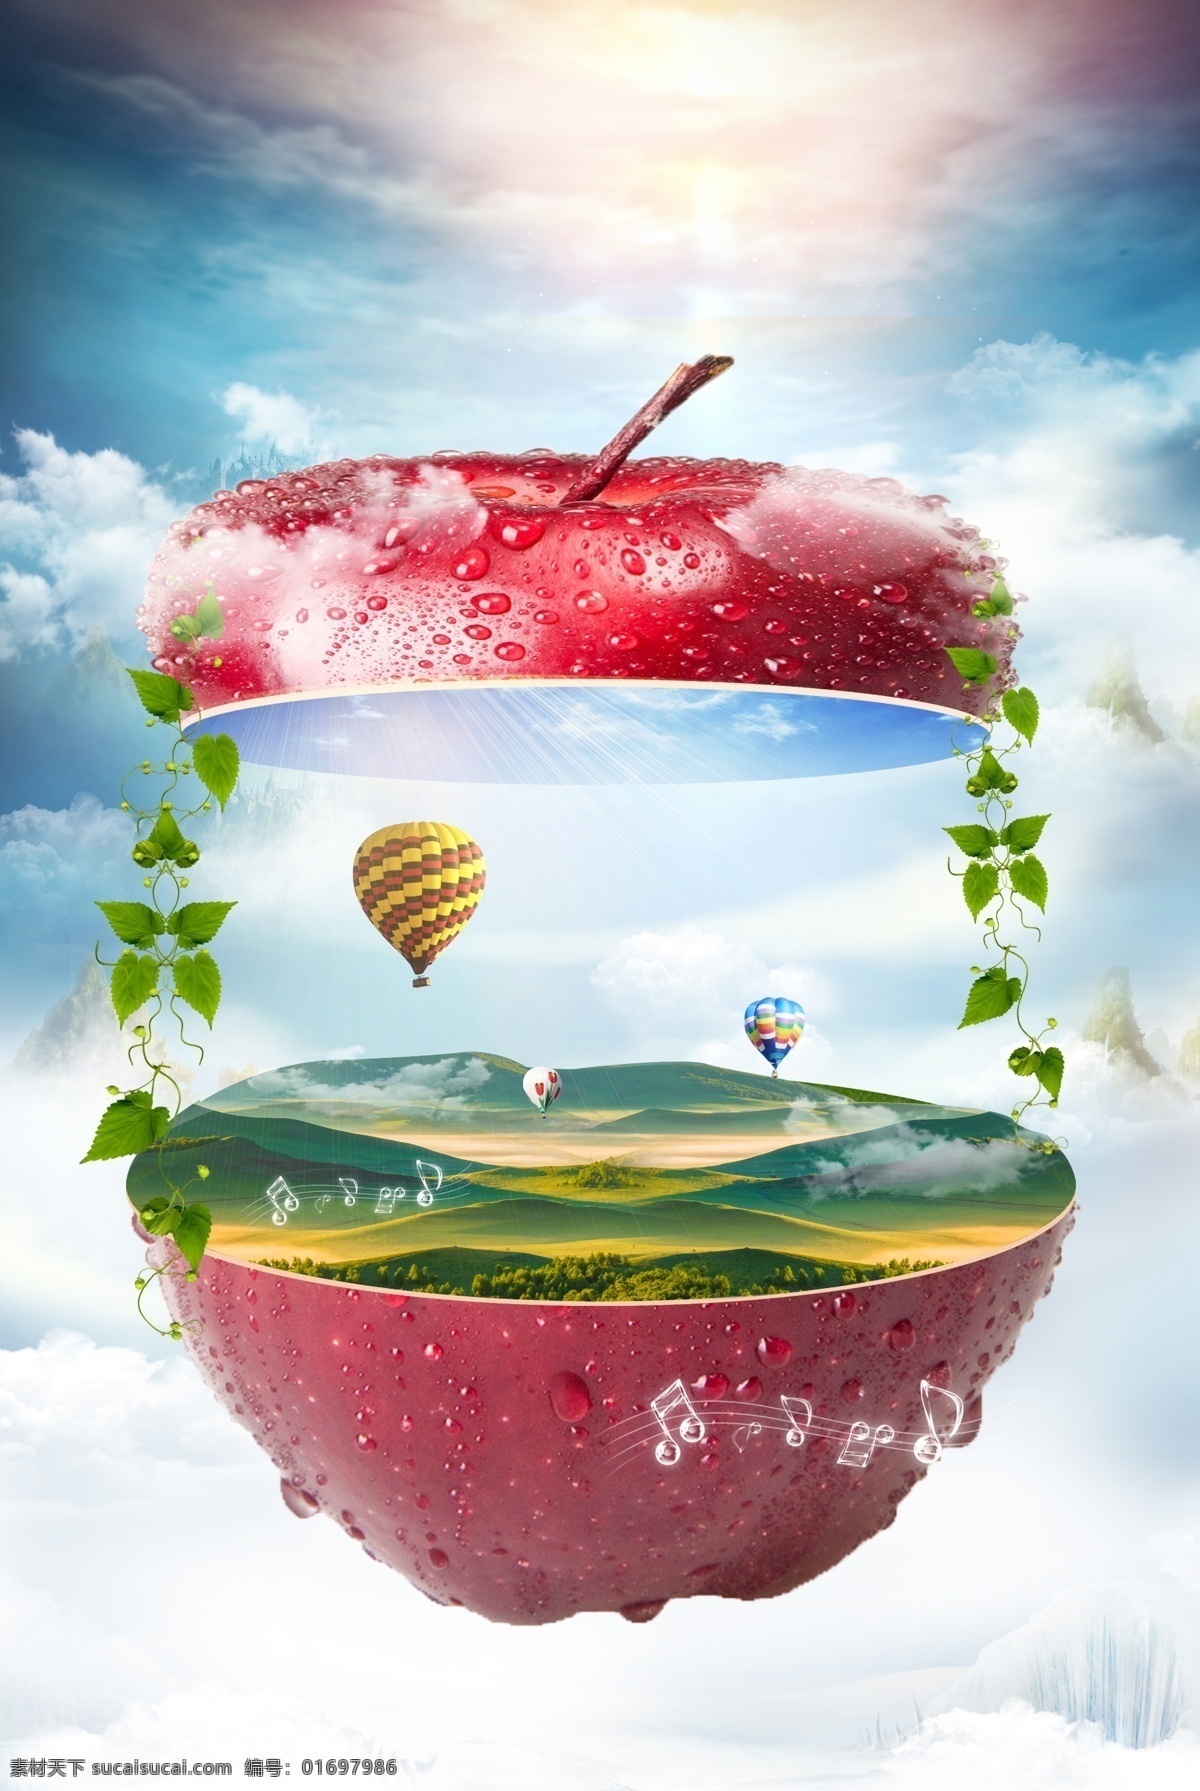 创意 合成 食物 背景 天马行空 星空 苹果 山脉 绿色 树叶 热气球 音符